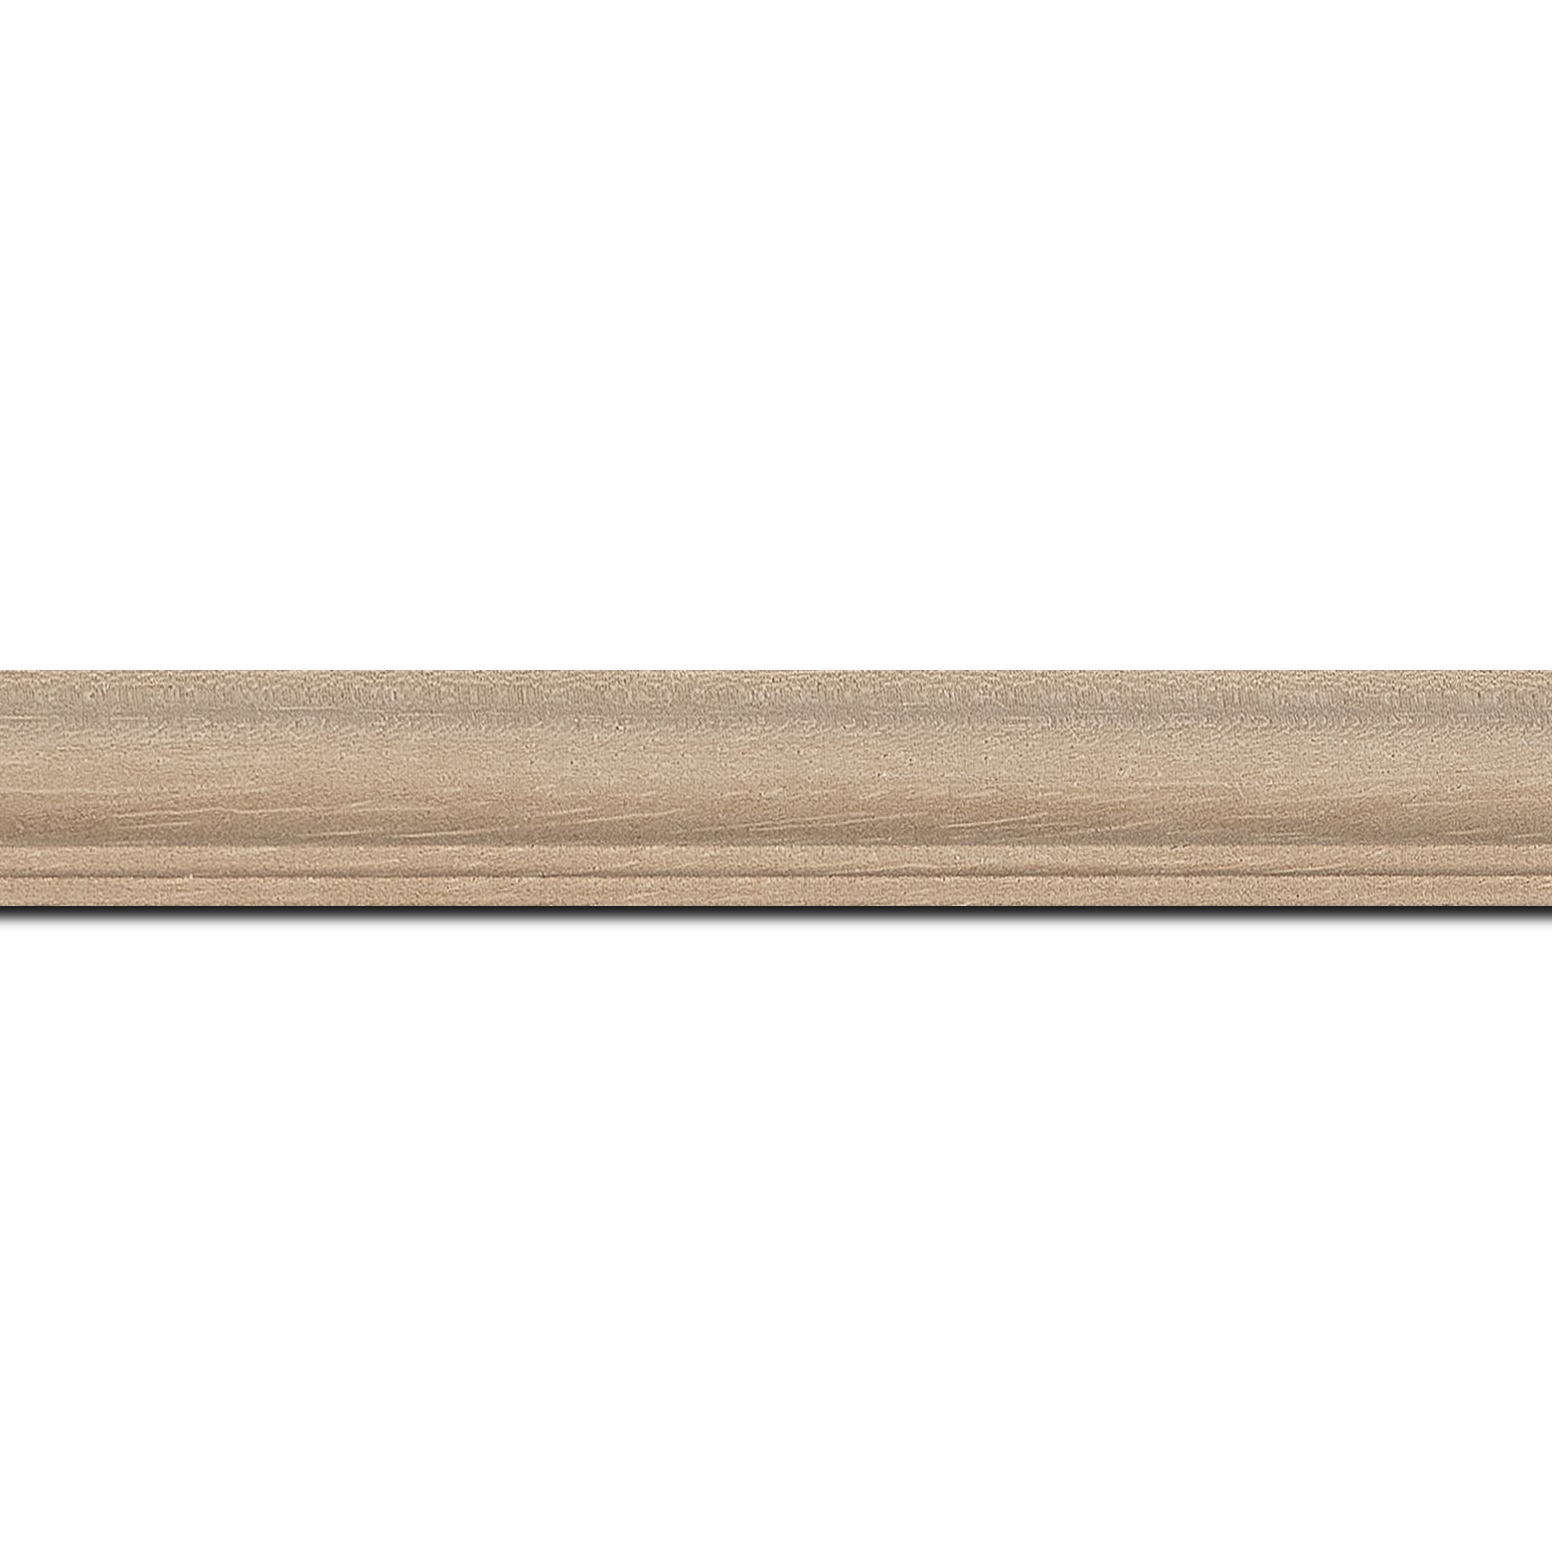 Pack par 12m, bois profil doucine inversée largeur 2.3cm ayous massif naturel ( sans vernis, peut être peint...)(longueur baguette pouvant varier entre 2.40m et 3m selon arrivage des bois)